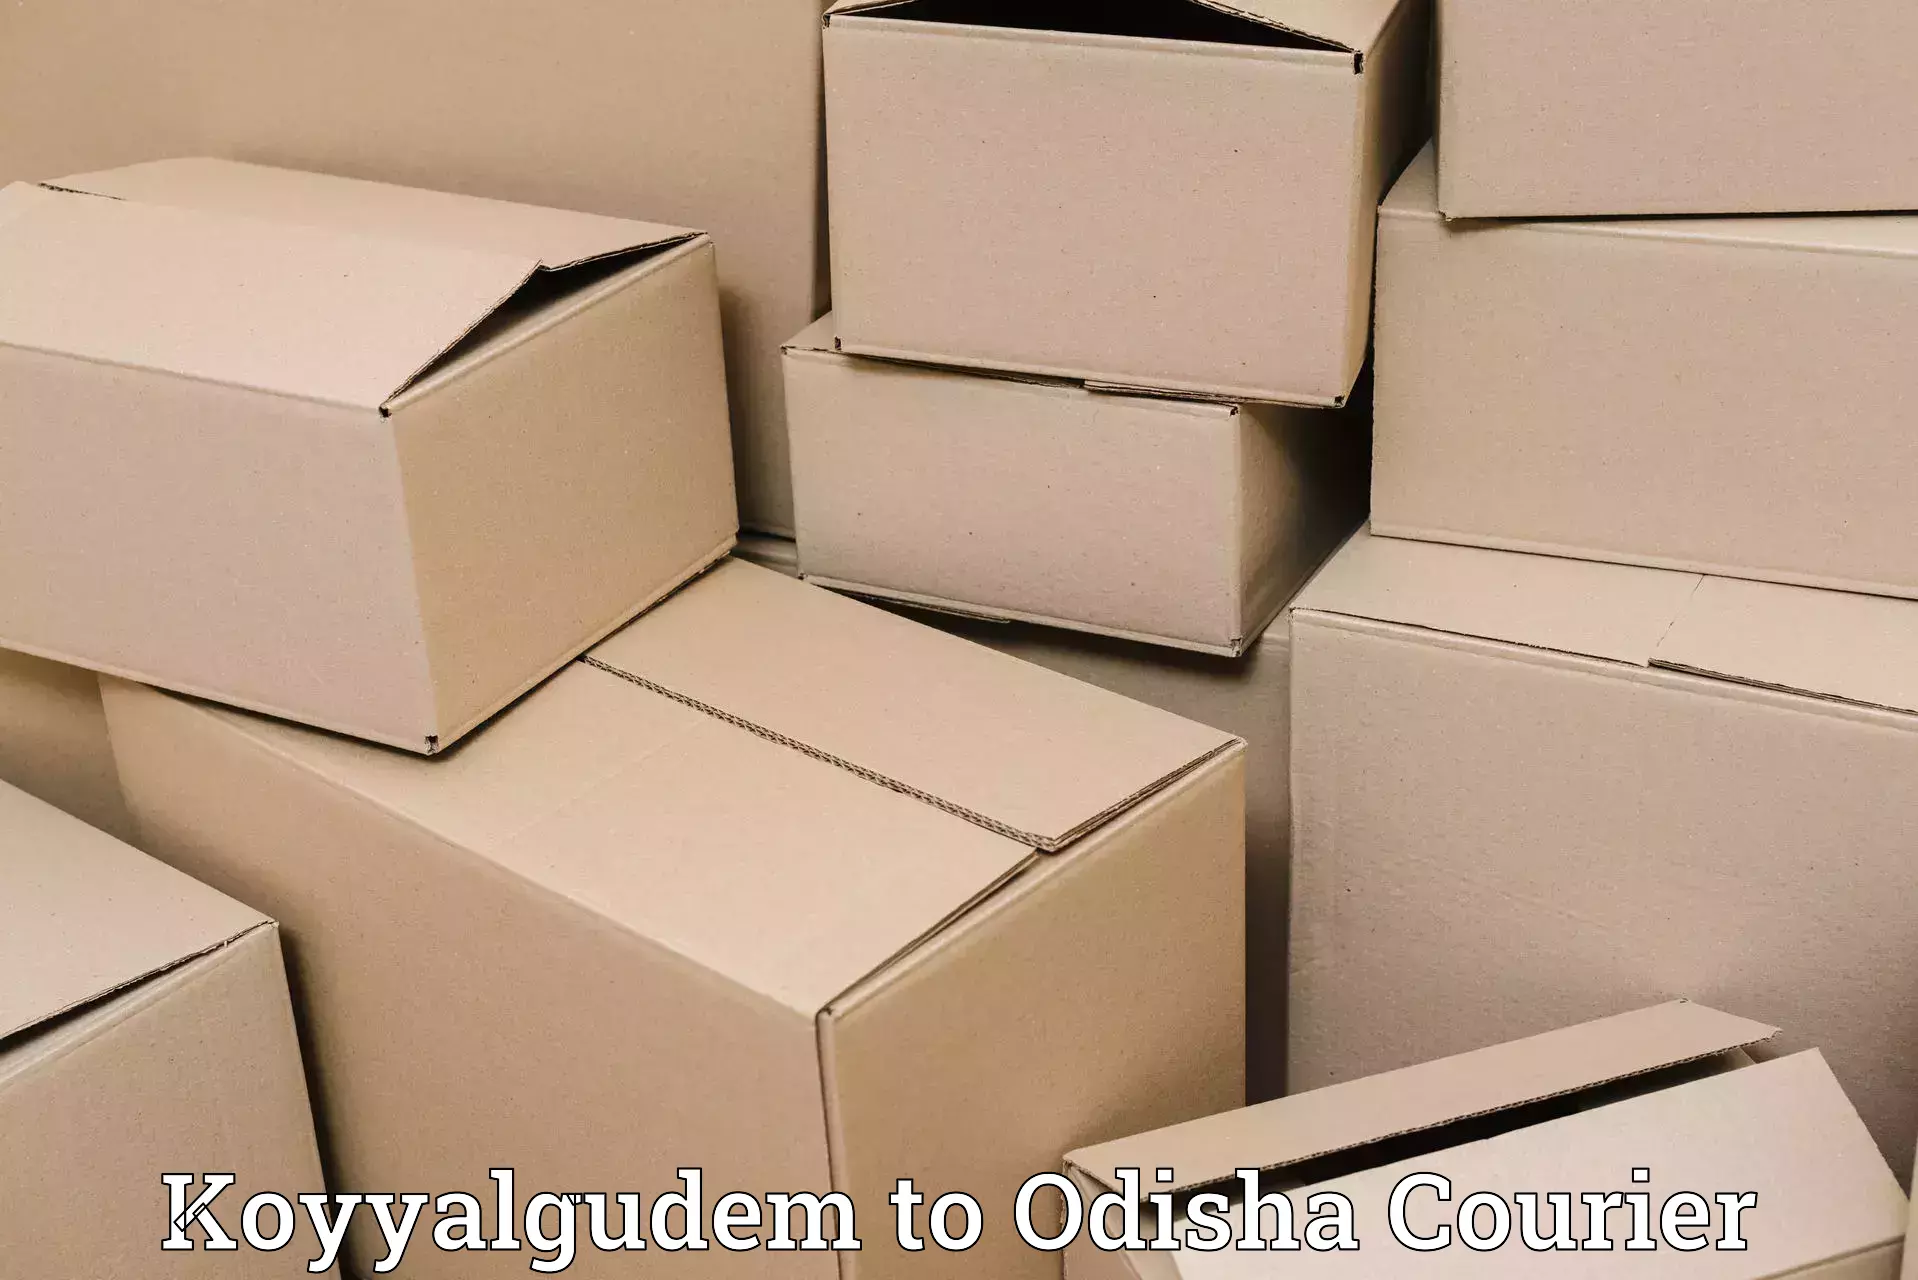 Bulk courier orders Koyyalgudem to Baleswar